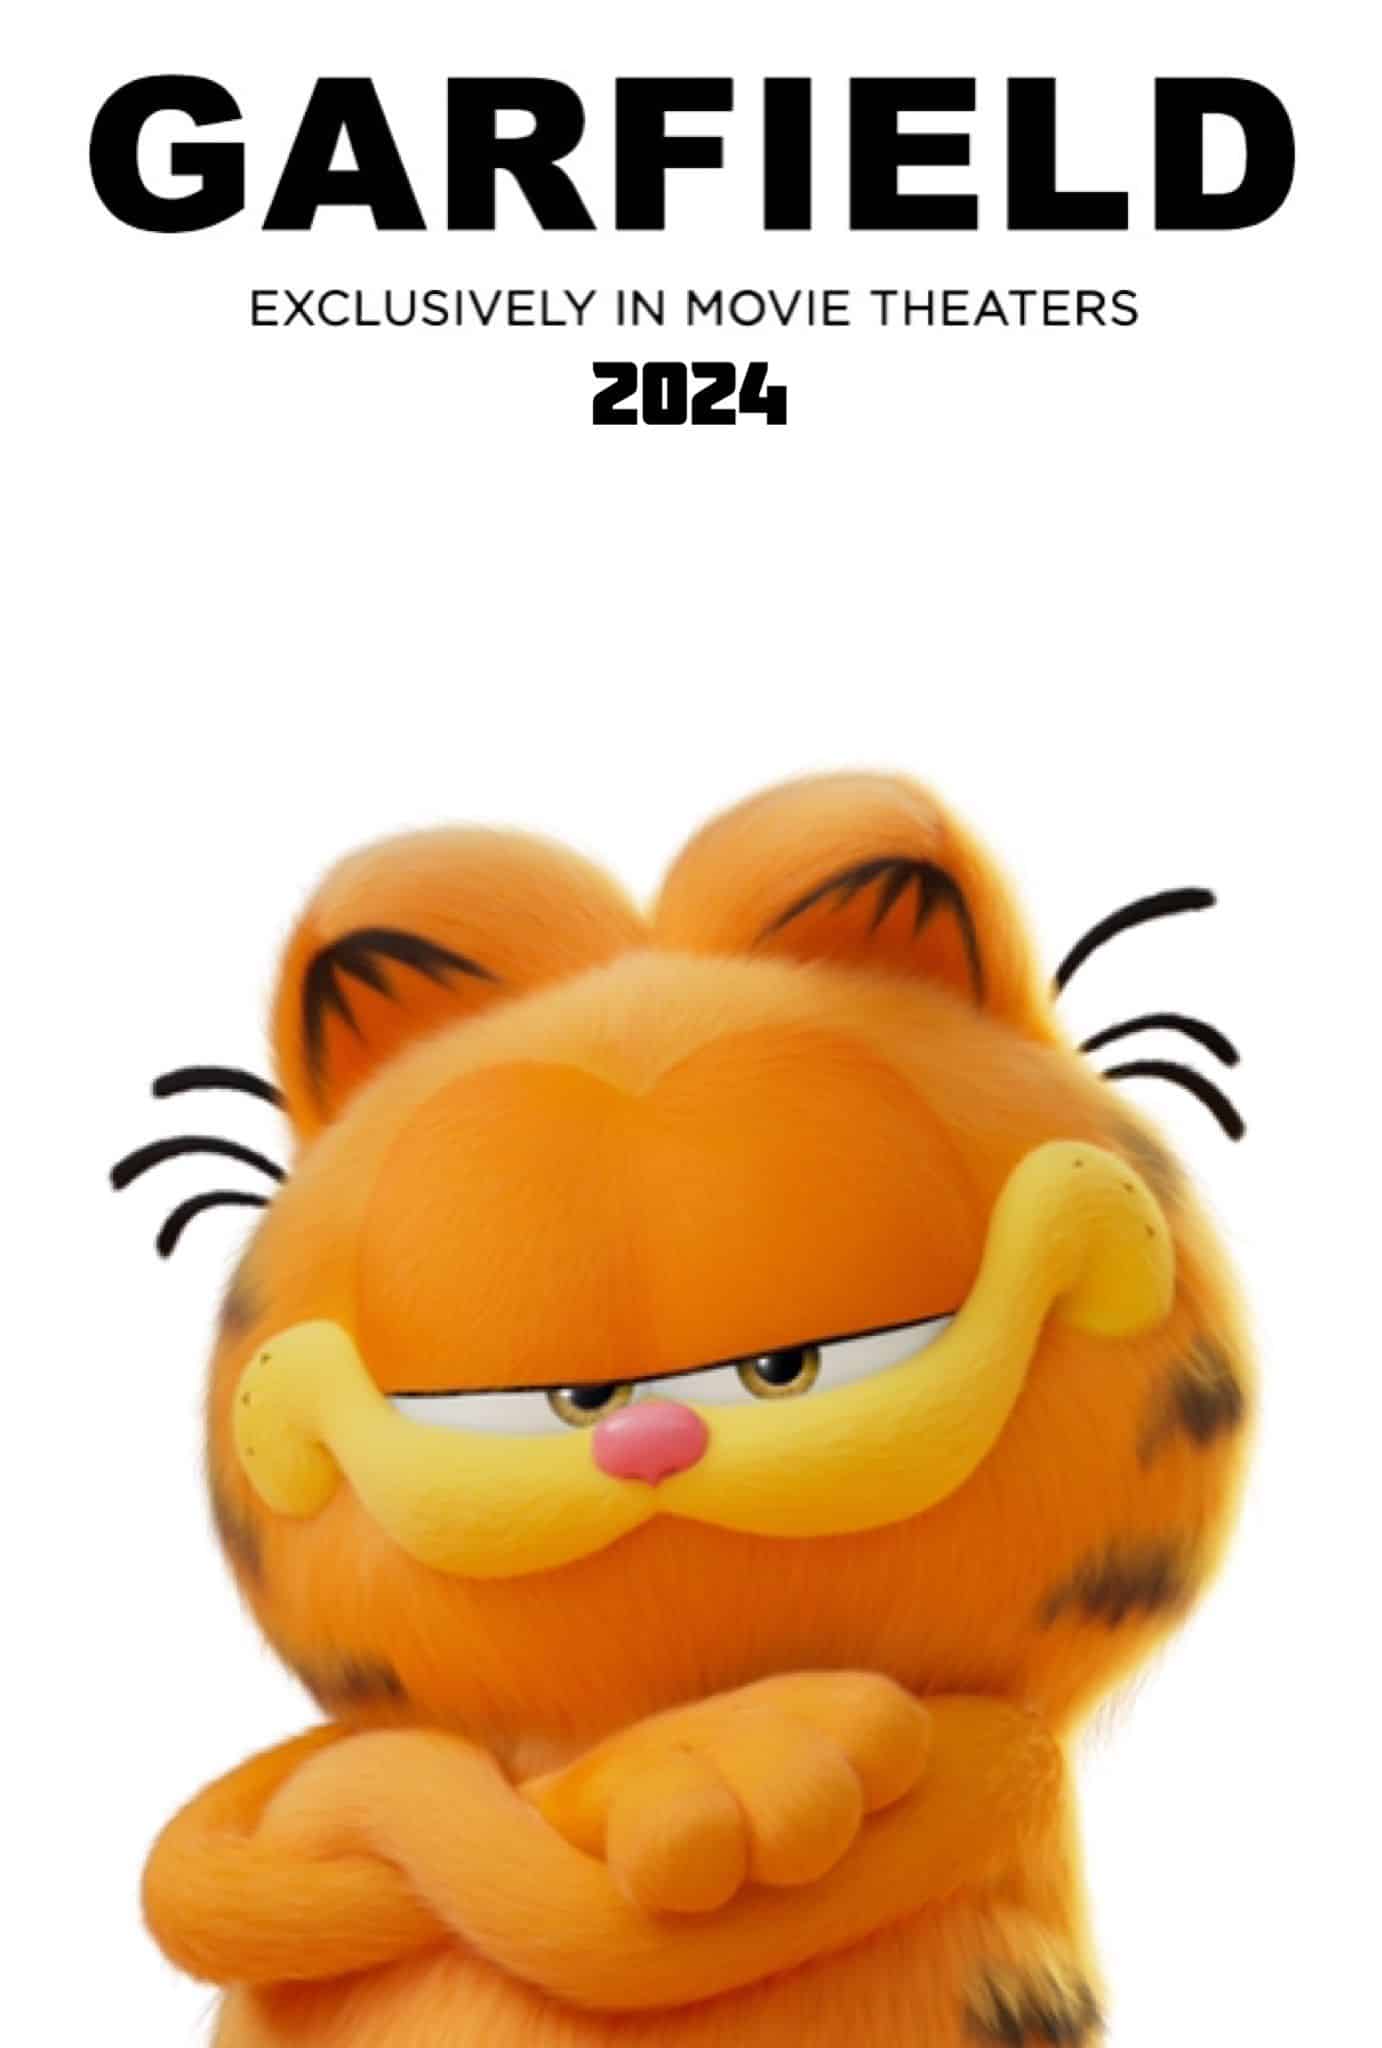 Cartel de la película Garfield 2024